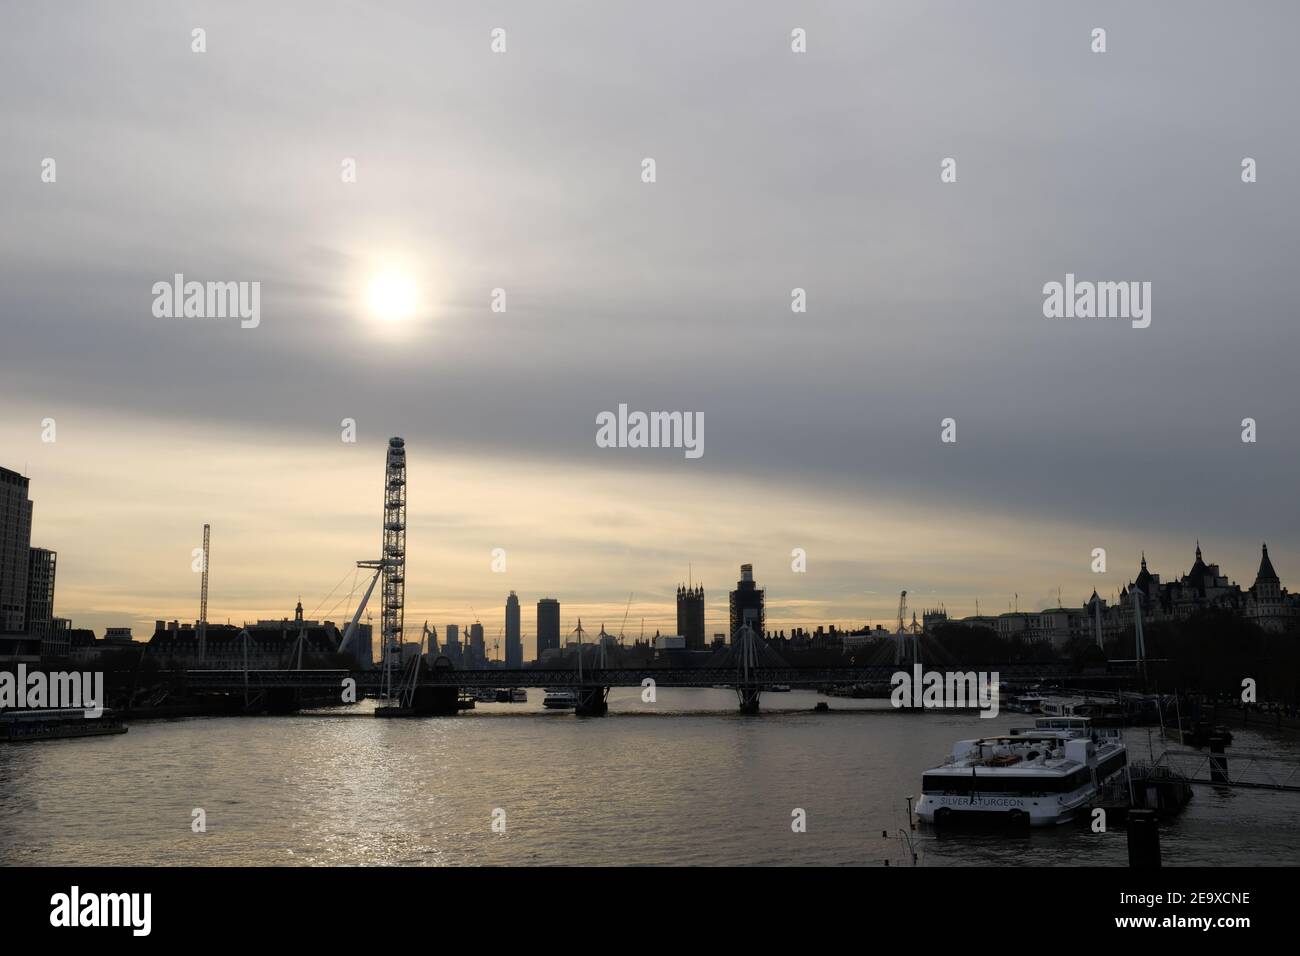 LONDON - DEZEMBER 2018: Spätabendaufnahme von Waterloo Bride mit Blick auf Westminster. Die Sonne untergeht durch den wolkigen Himmel Stockfoto